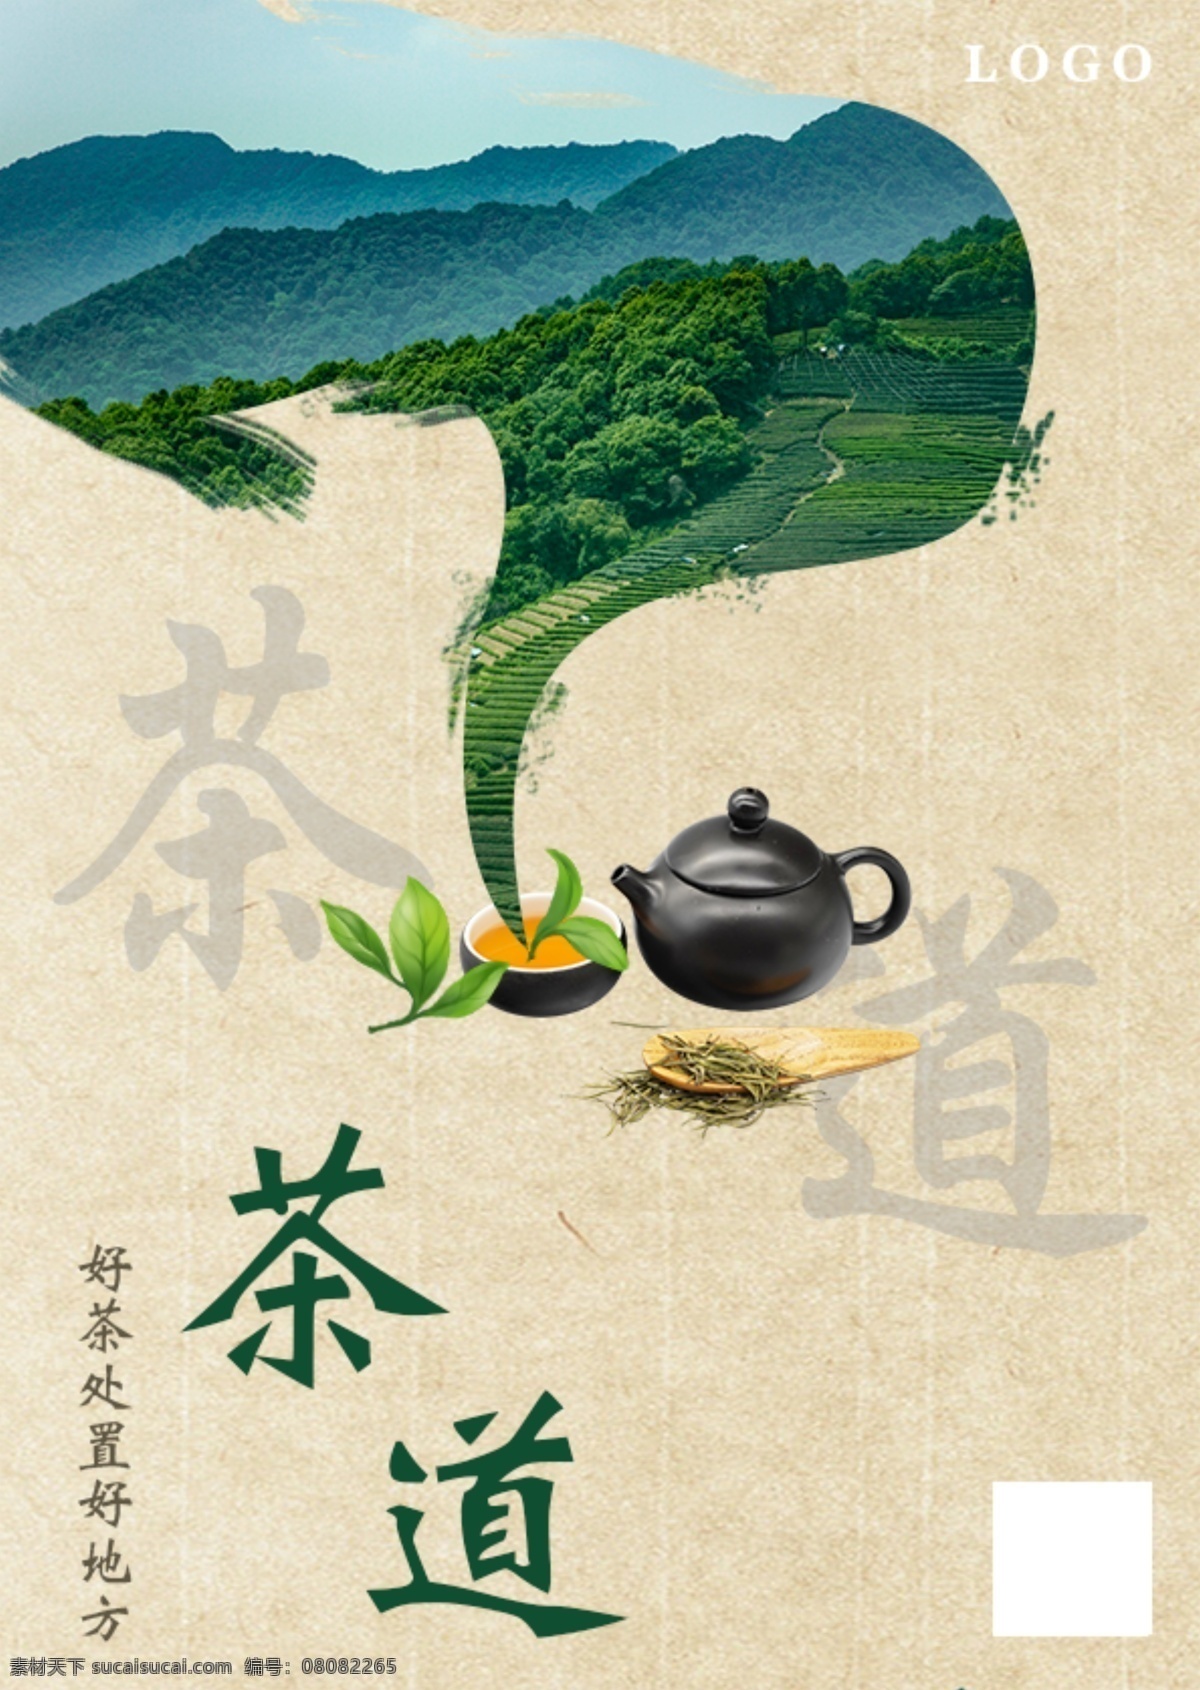 茶 海报 设计制作 茶海报 茶宣传单 宣传单设计 海报制作 dm宣传单